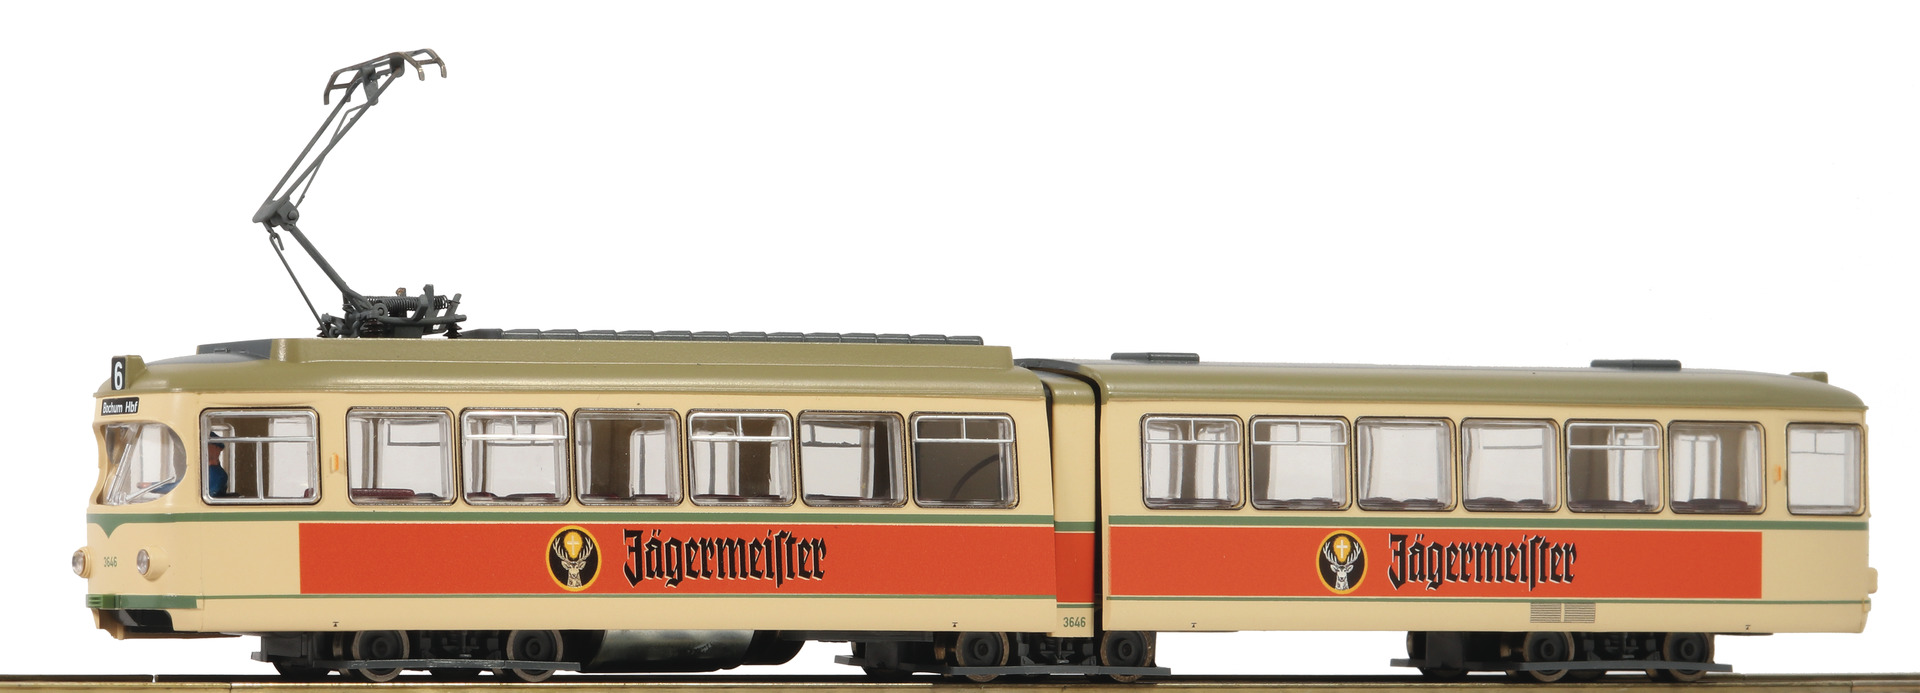 roco-52580-Straßenbahn-Jägermeister-Schnapszug